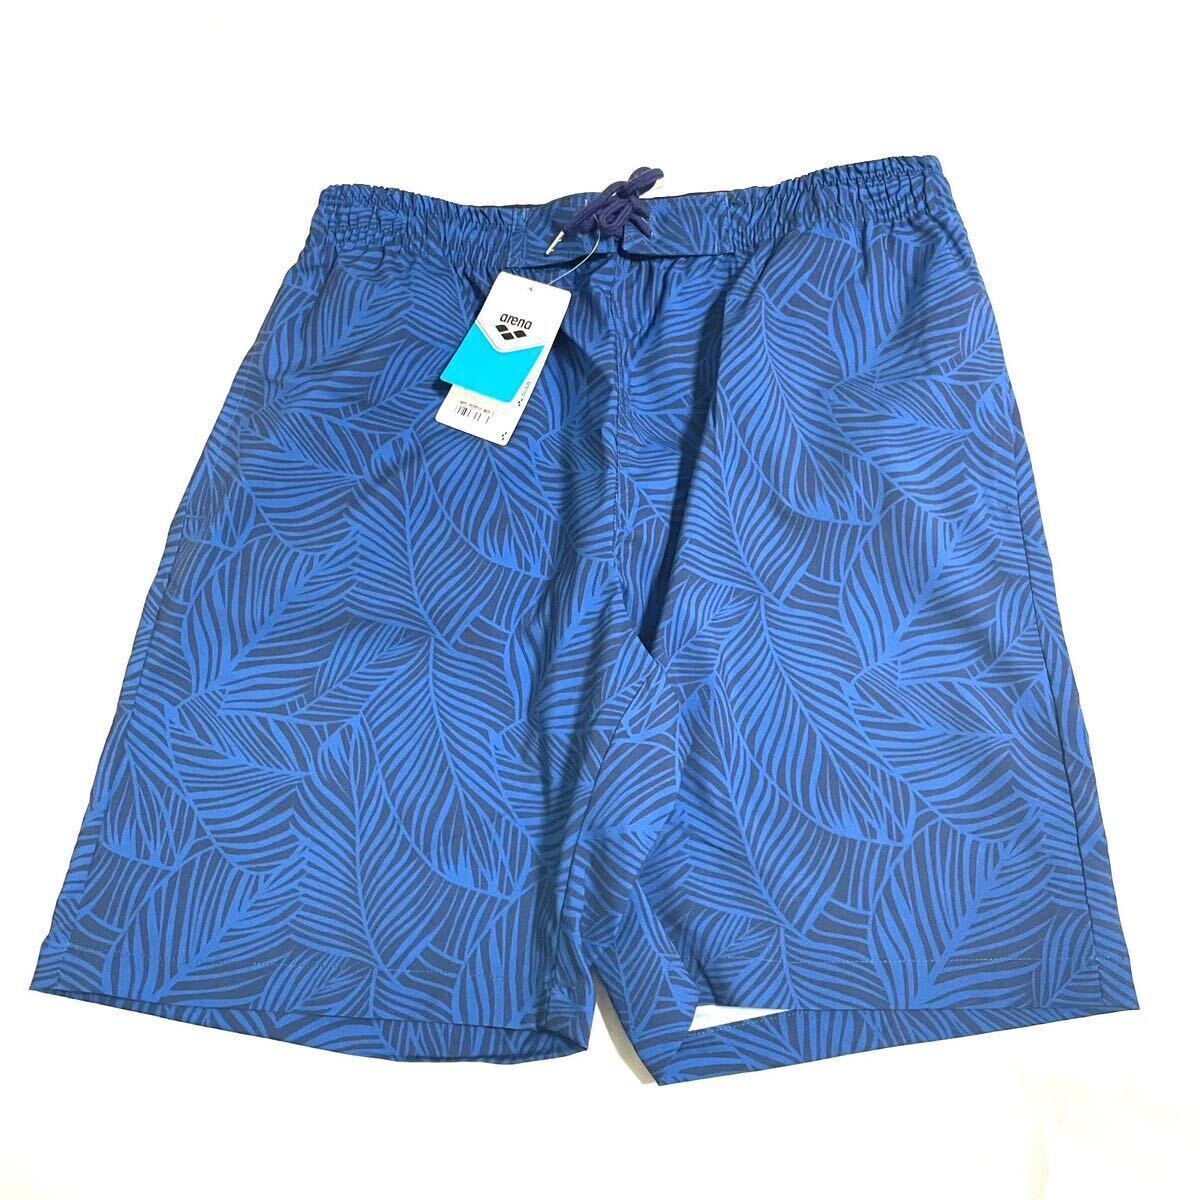 *H549 новый товар [ мужской XL(O)] общий рисунок темно-синий ARENA BEACHSIDE LIFESTYLE шорты 7inch шорты пляж боковой жизнь стиль 